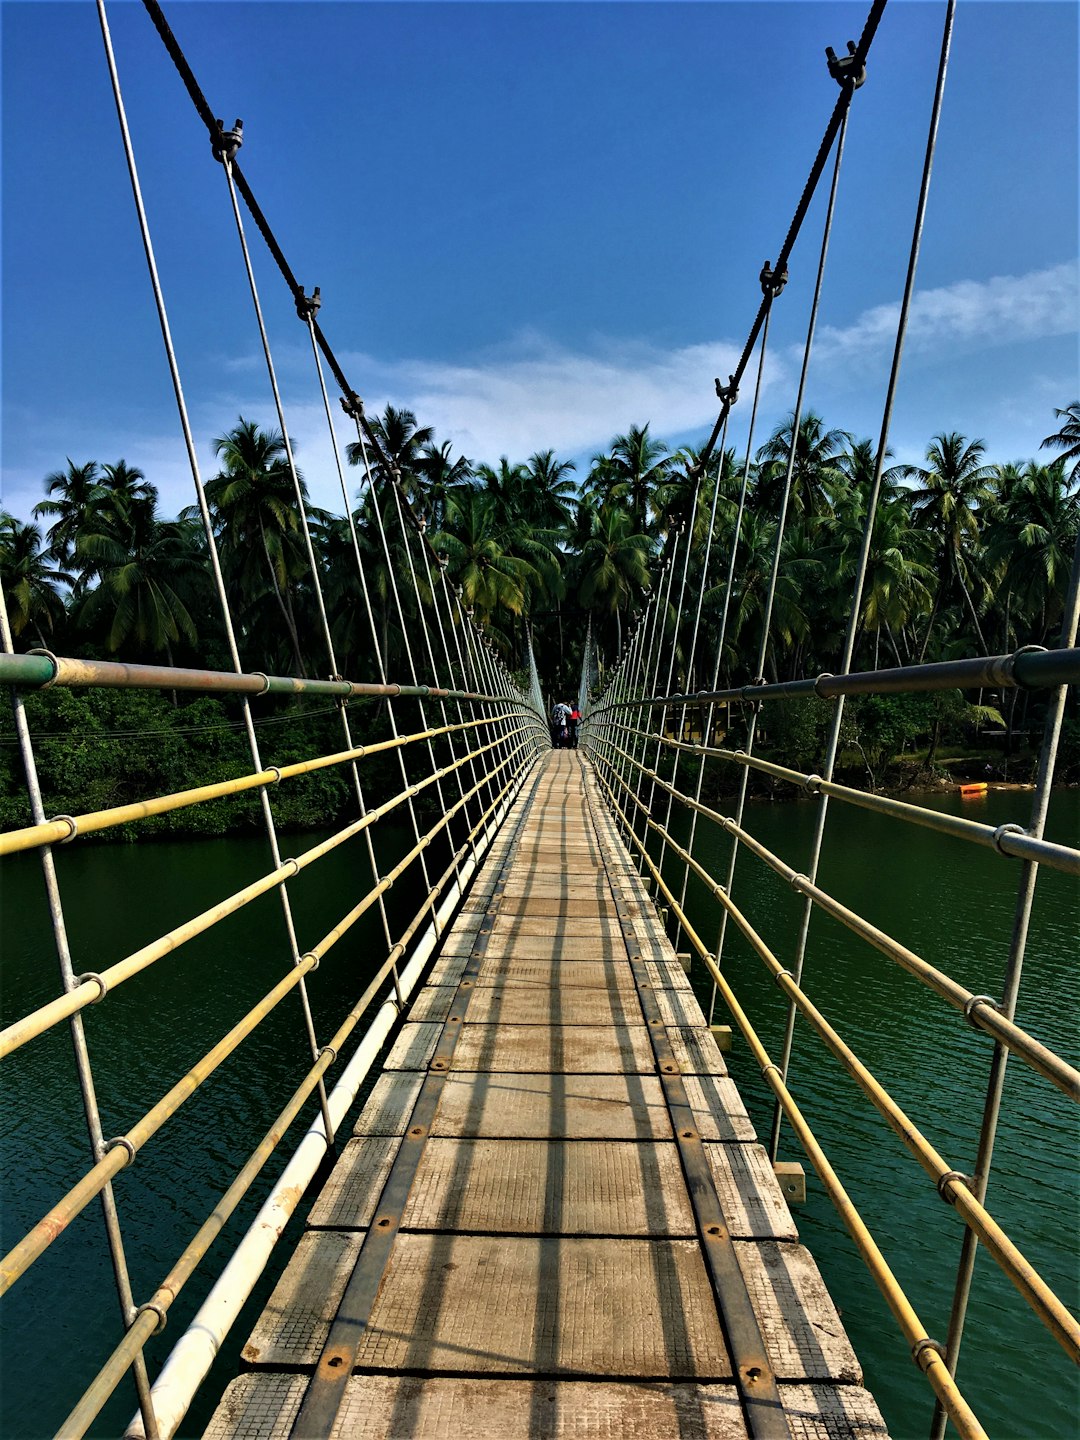 Suspension bridge photo spot Mangalore India